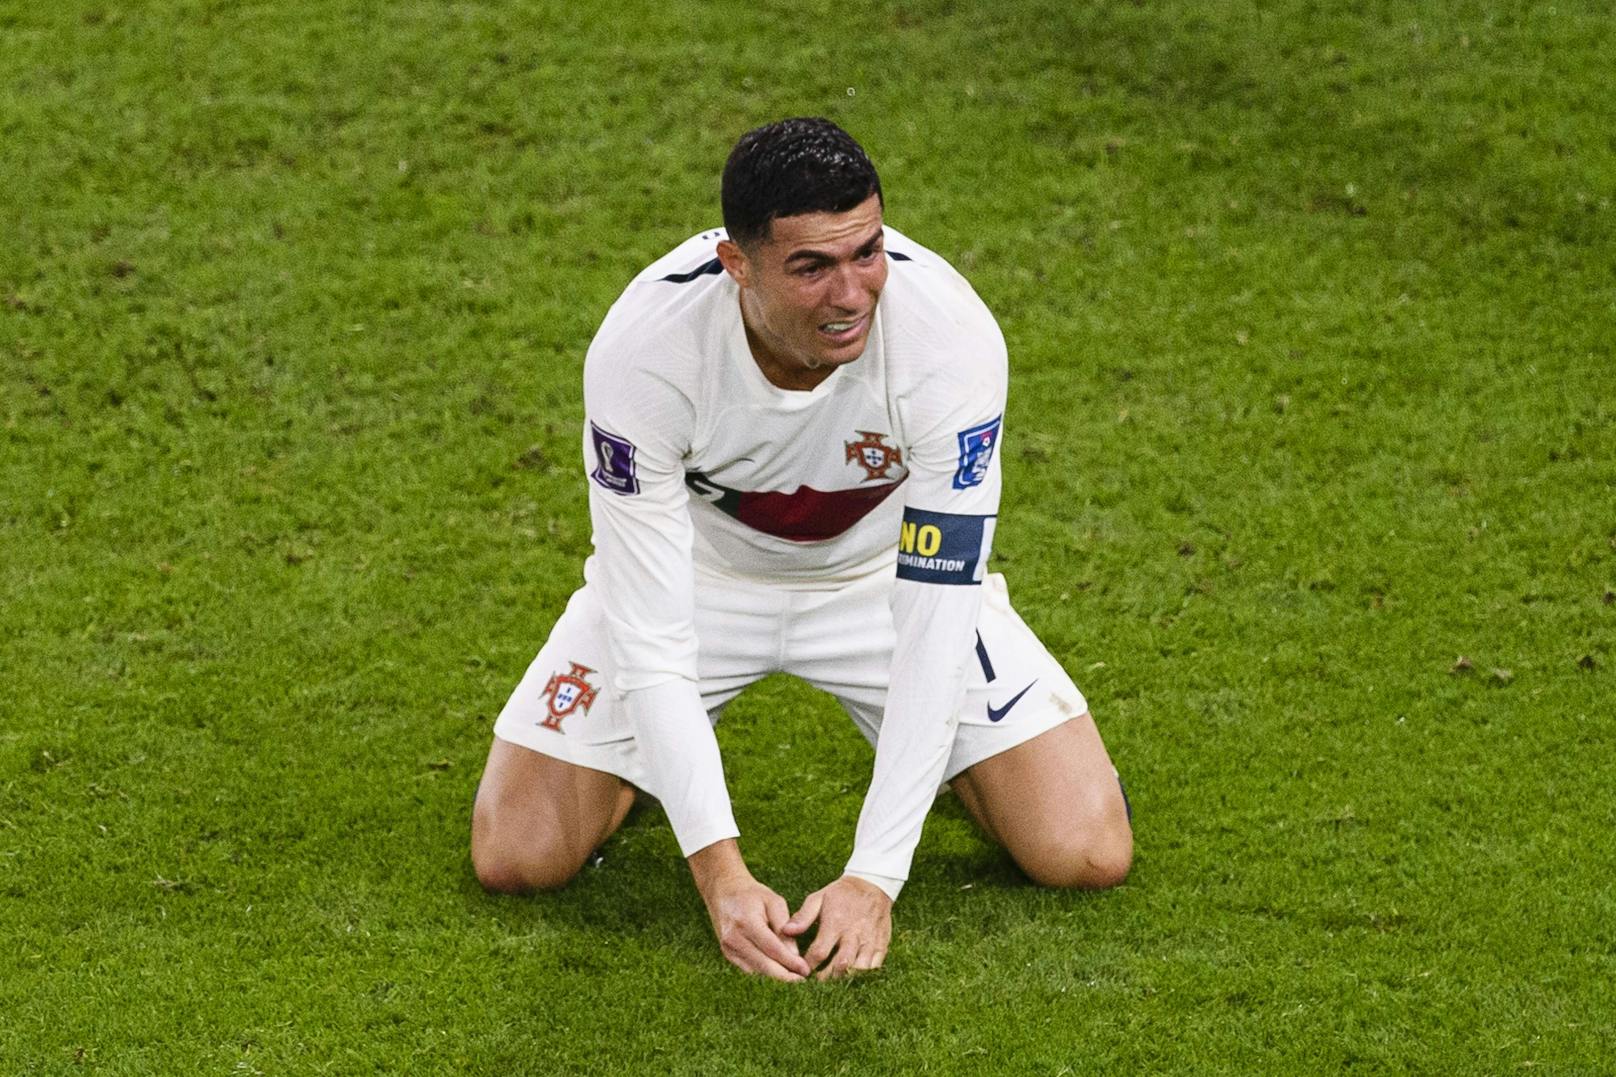 Die Folge: Cristiano Ronaldo am Boden. Der Superstar weinte bitter, verließ das Feld Fluchtartig ohne seine Kollegen eines Blickes zu würdigen. Für ihn der wohl letzte Auftritt bei einer Weltmeisterschaft.